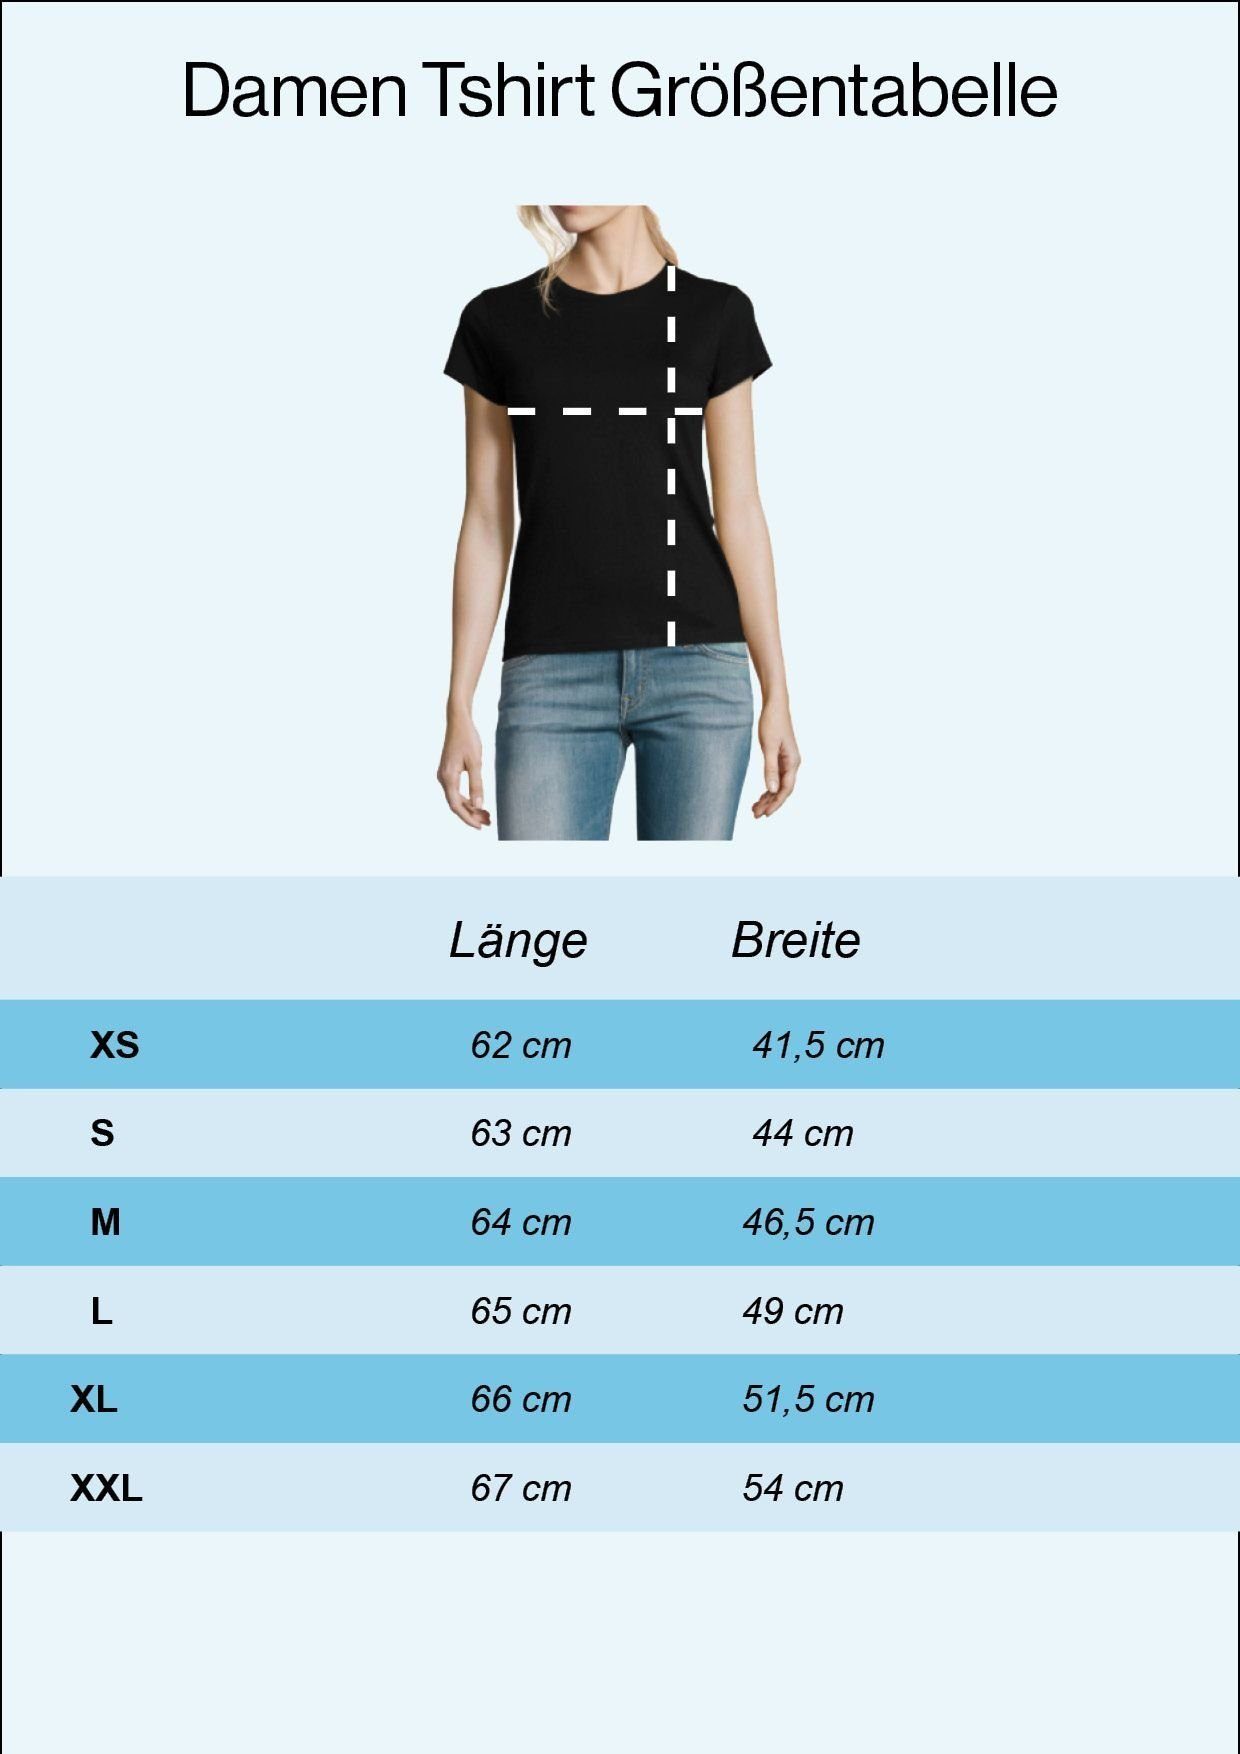 Sith mit trendigem T-Shirt Old T-Shirt Royalblau Designz Damen Youth Spruch Too